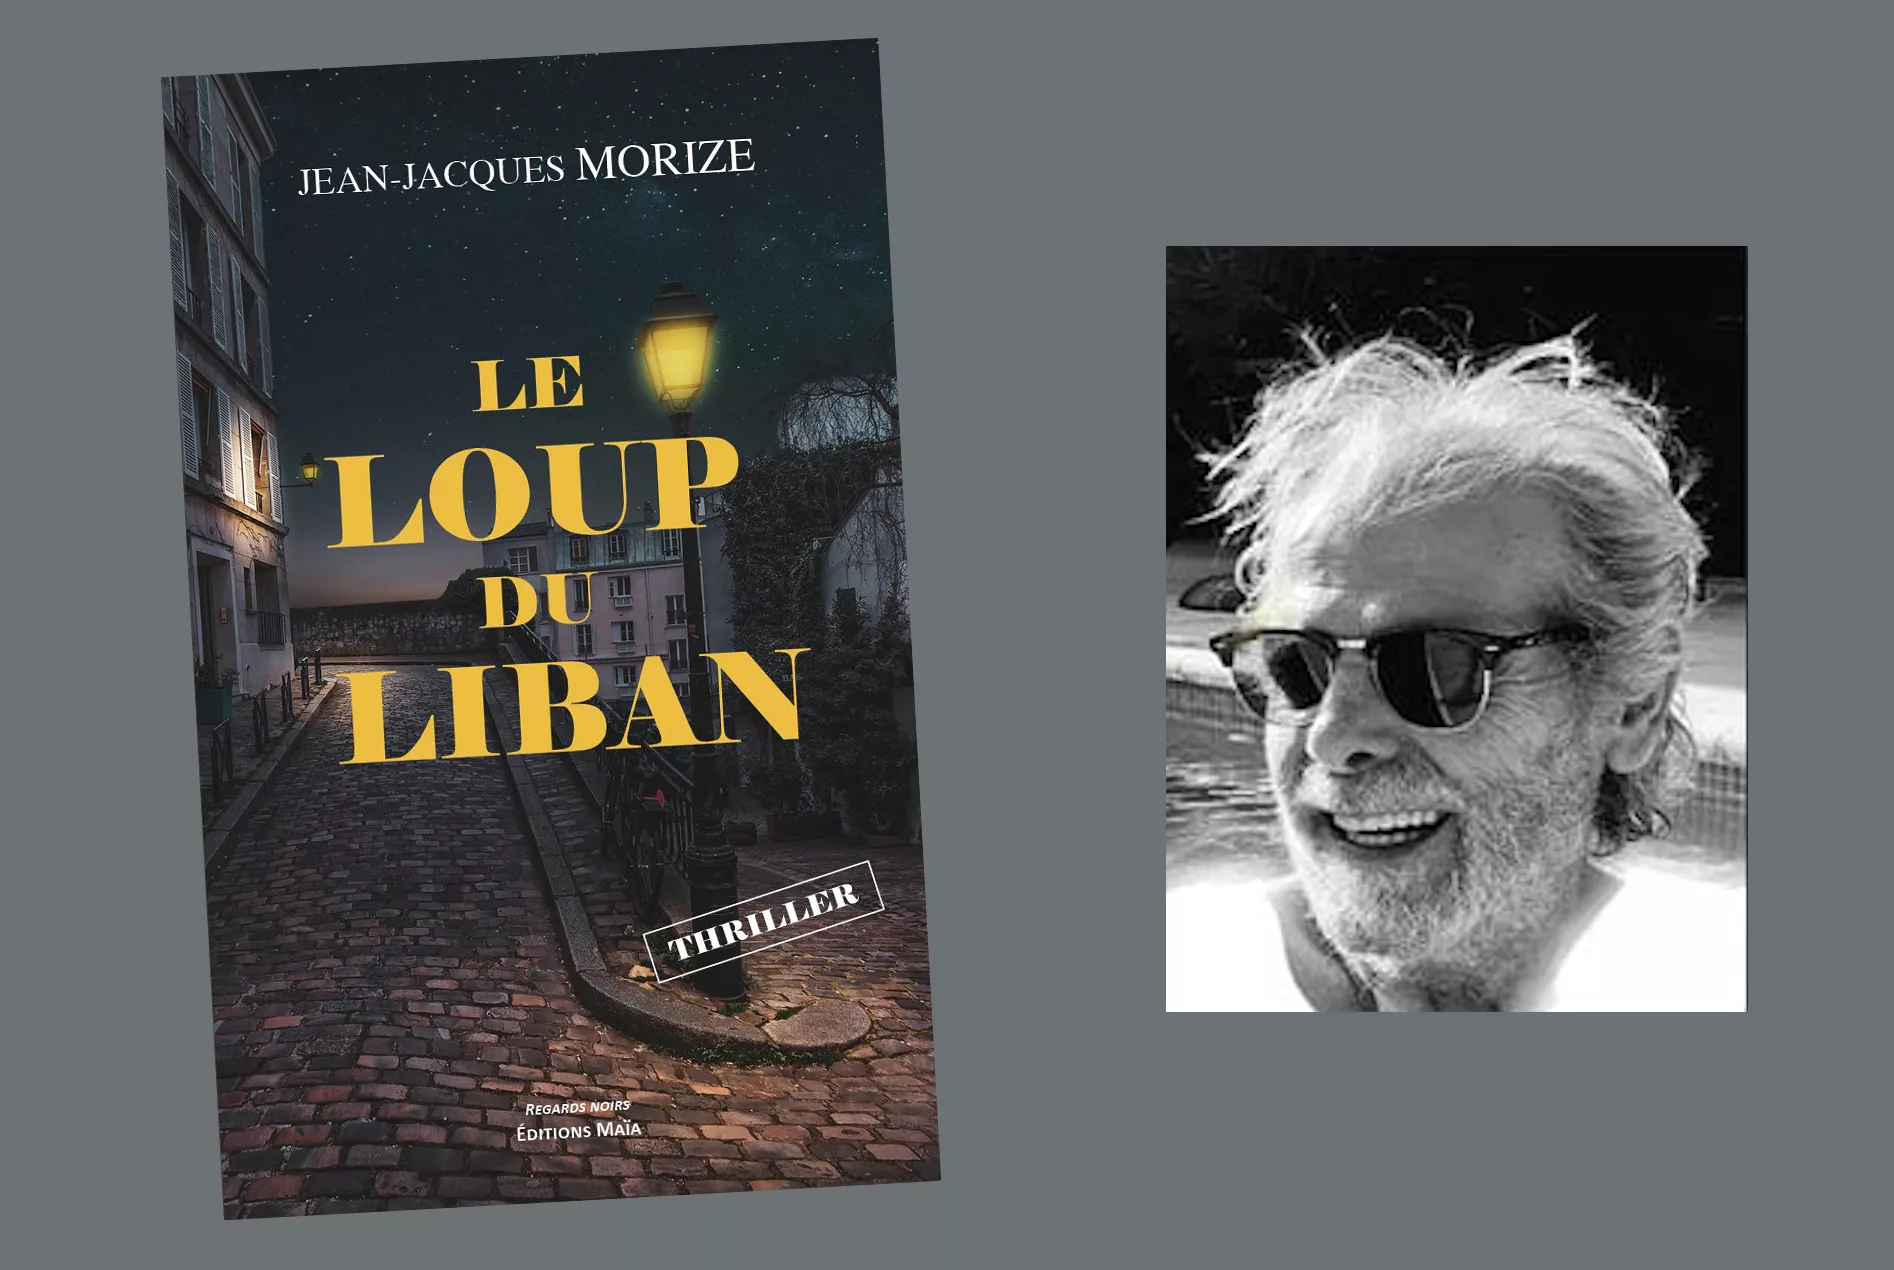 La bibliothèque de Connaux accueillera Jean-Jacques Morize ce samedi pour une séance de dédicaces de son livre, LE LOUP DU LIBAN